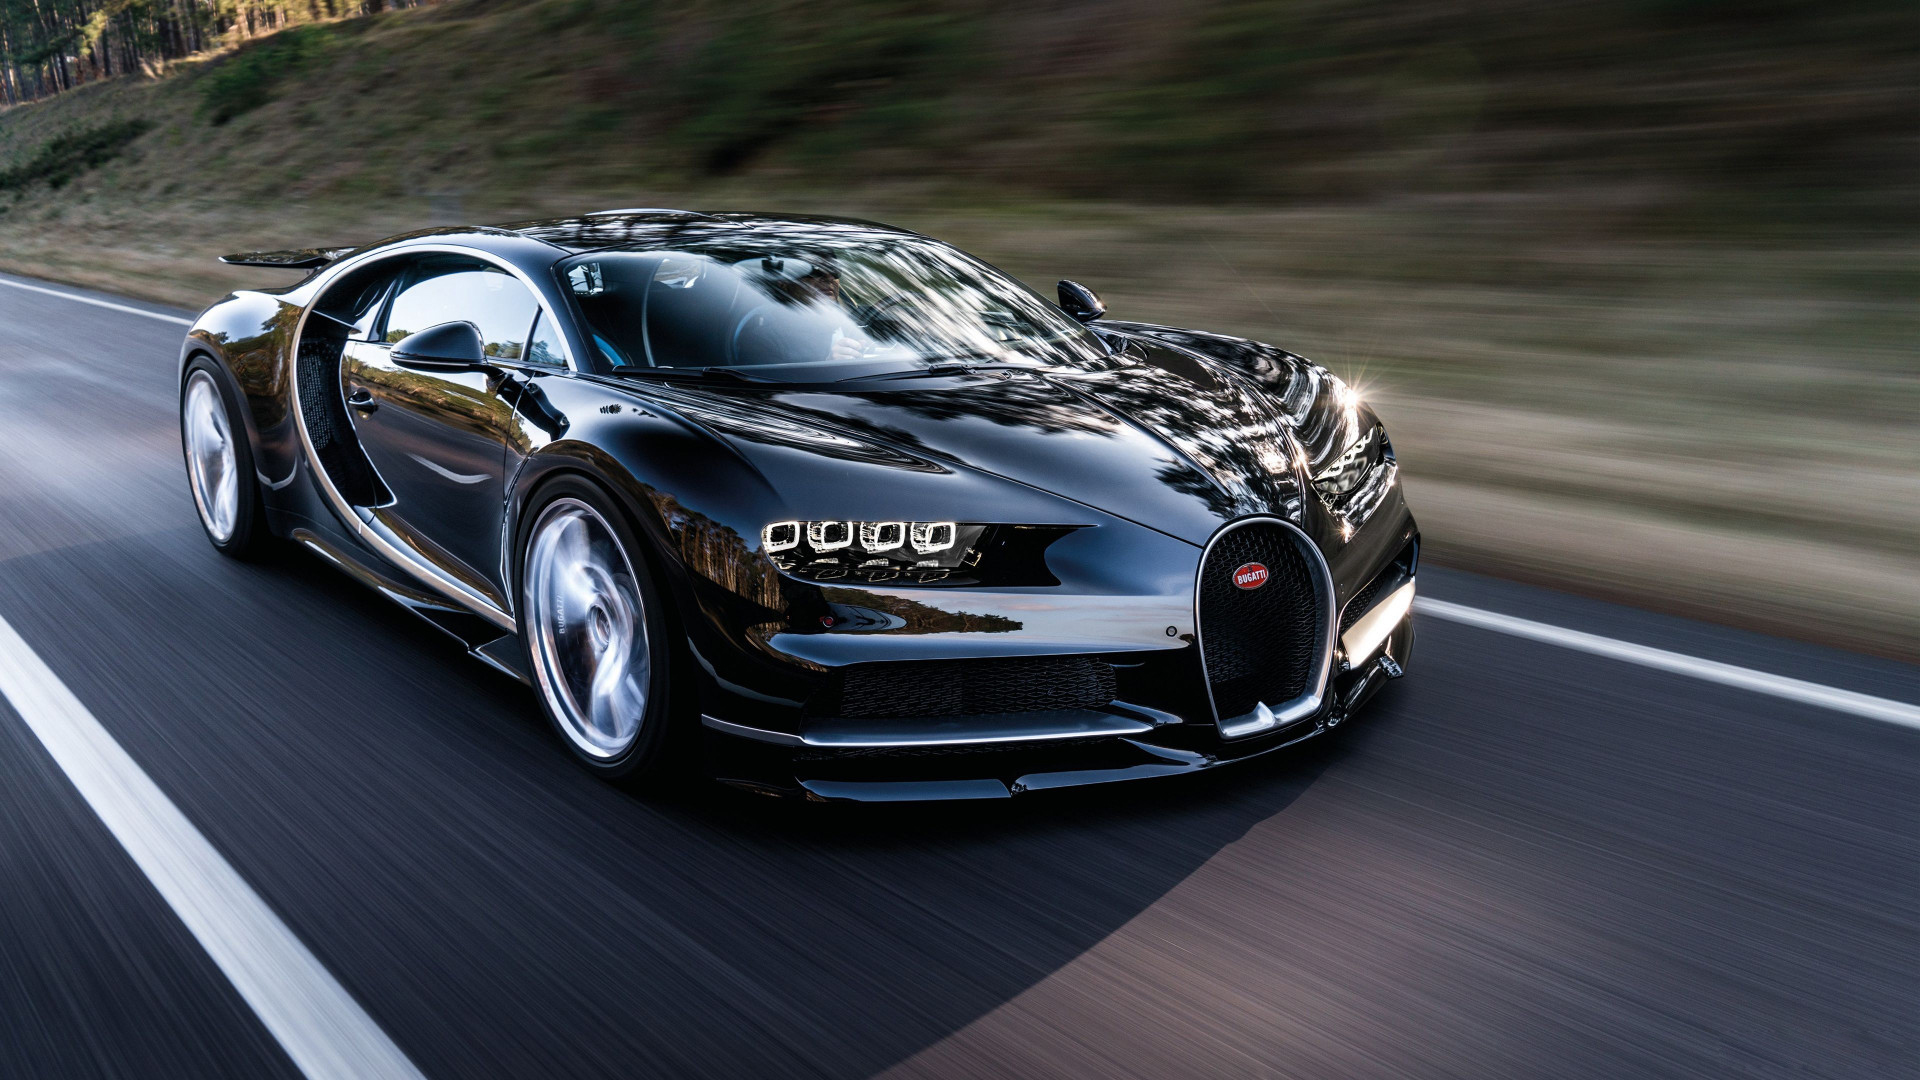 Siêu xe Bugatti: Hãy tận hưởng cái nhìn đắm say vào mẫu siêu xe Bugatti đầy quyến rũ này với đường cong hoàn mỹ và lực kéo cực mạnh. Tạo dựng sự tiên tiến và sang trọng cho bất cứ sự kiện nào.